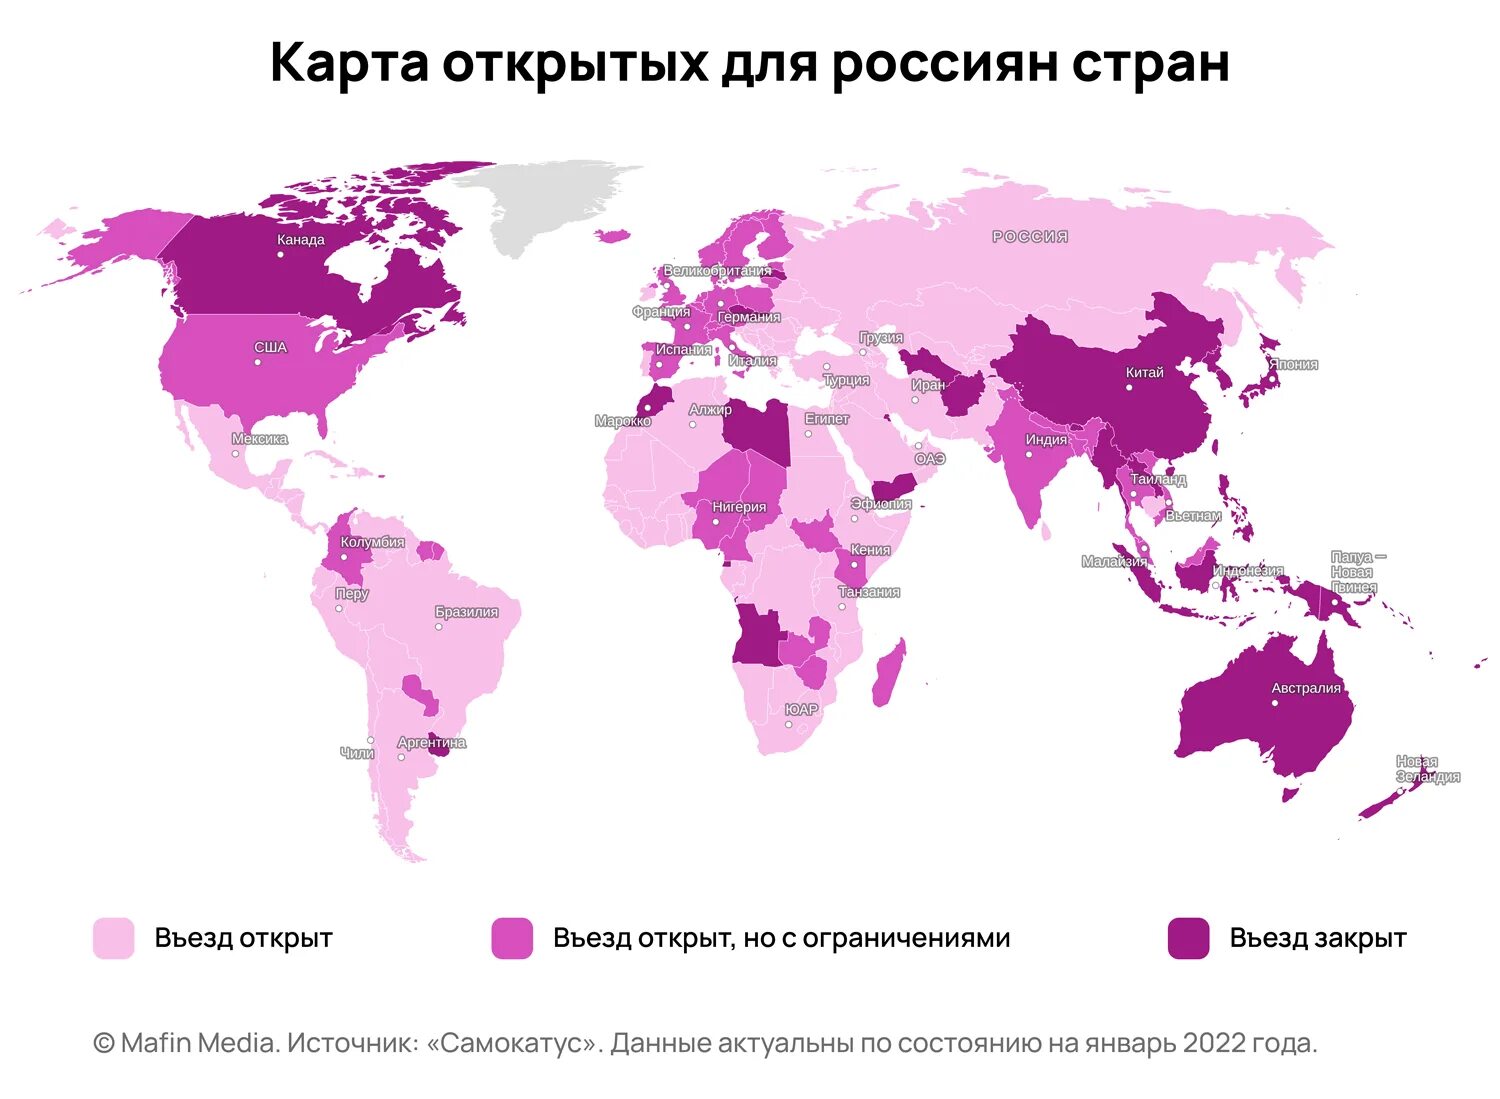 Какая страна сейчас открыта. Карта открытых стран для россиян 2022. Открытые страны для россиян 2022. Какие страны открыты для россиян в 2022. Какие страны сейчас открыты для россиян 2022.